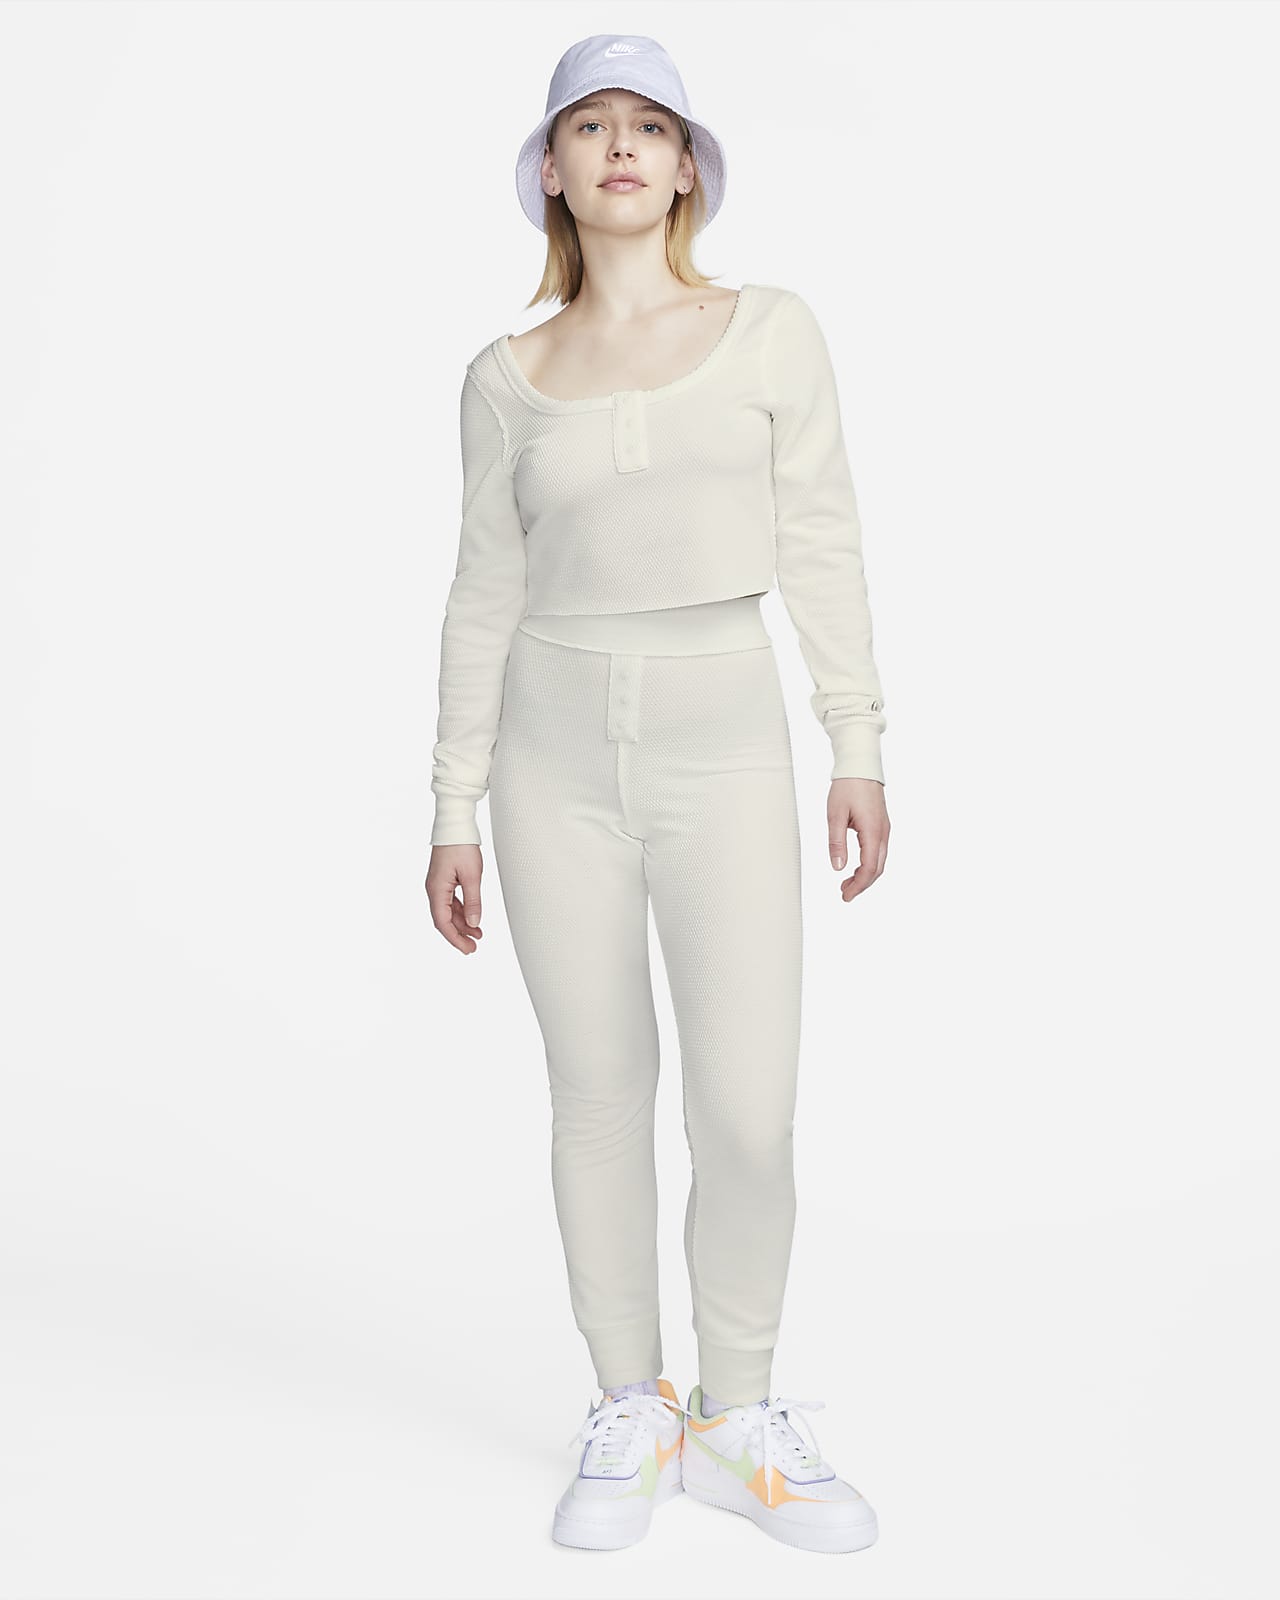 Women\'s Modern Long-Sleeve Crop Nike Everyday Sportswear Top.